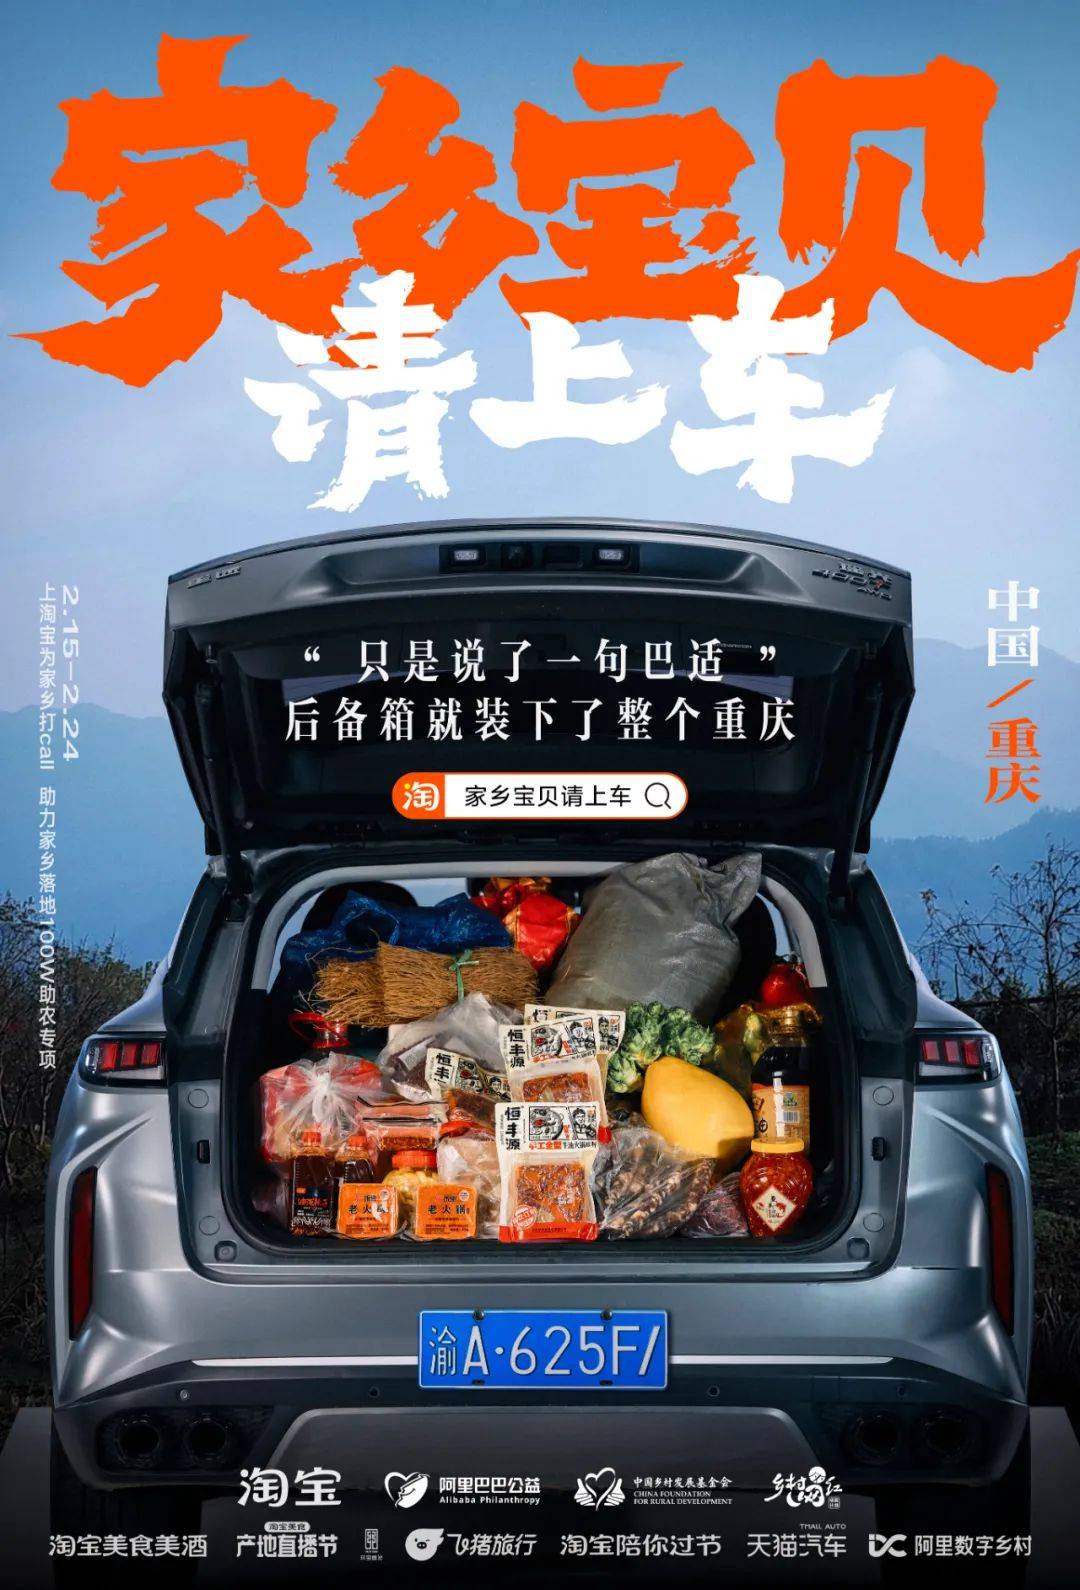 凭公益突围CNY营销，淘宝号召全网「我的家乡我来宝贝」